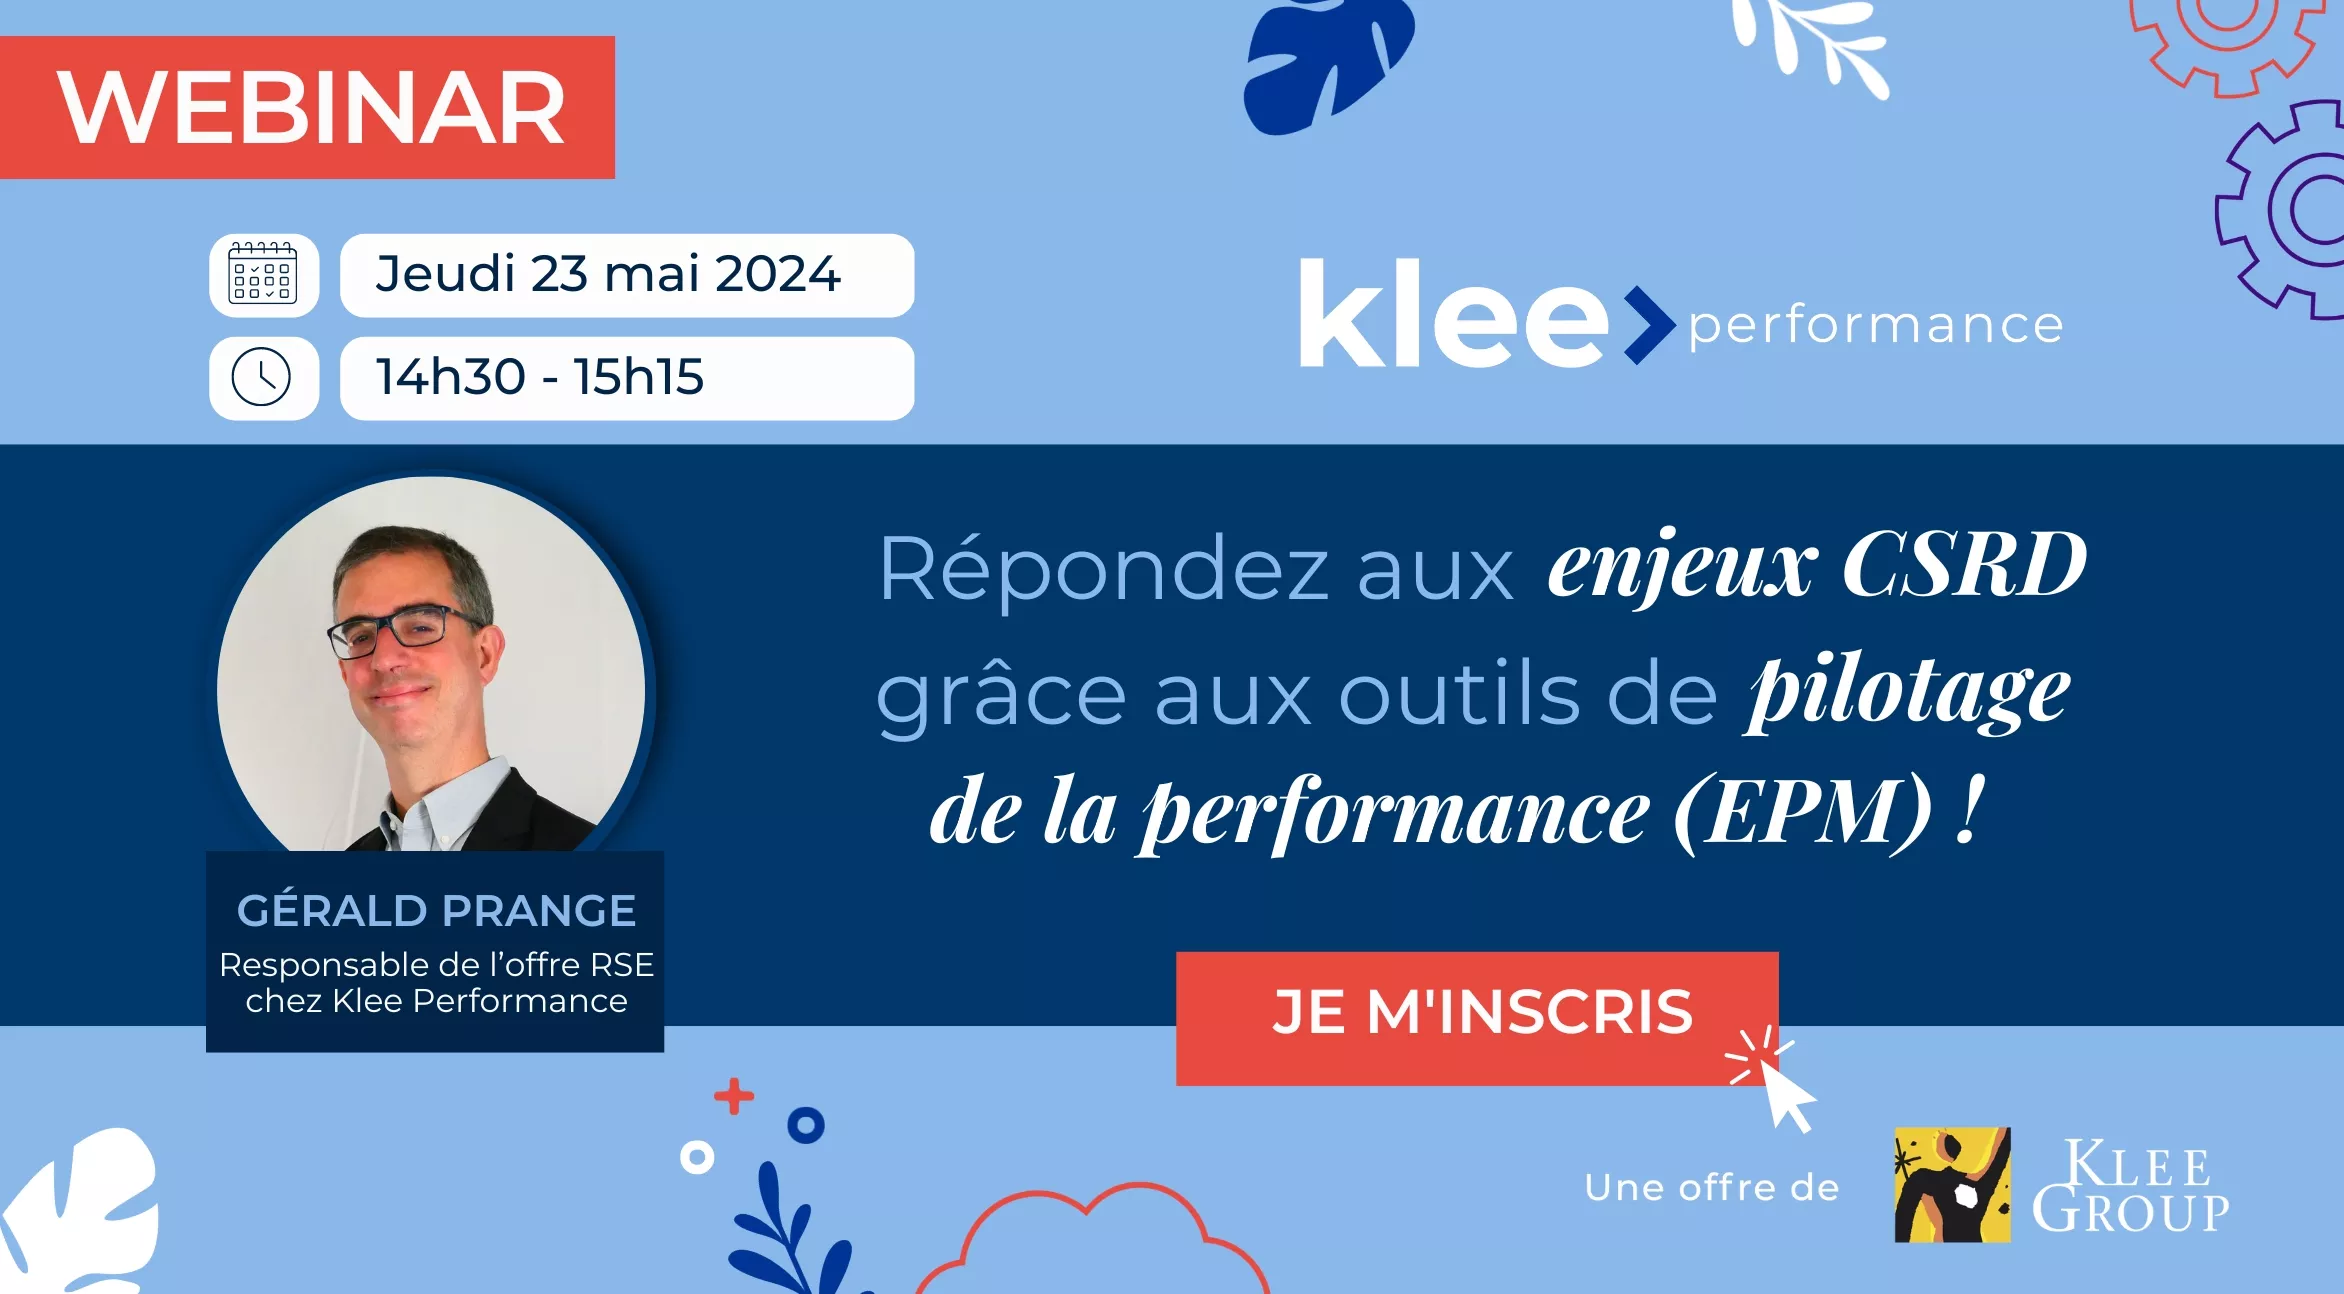 Le webinar aura lieu le 23 mai de 14h30 à 15h15 et sera animé par Gérald Prange, Responsable de l'offre RSE chez Klee Performance